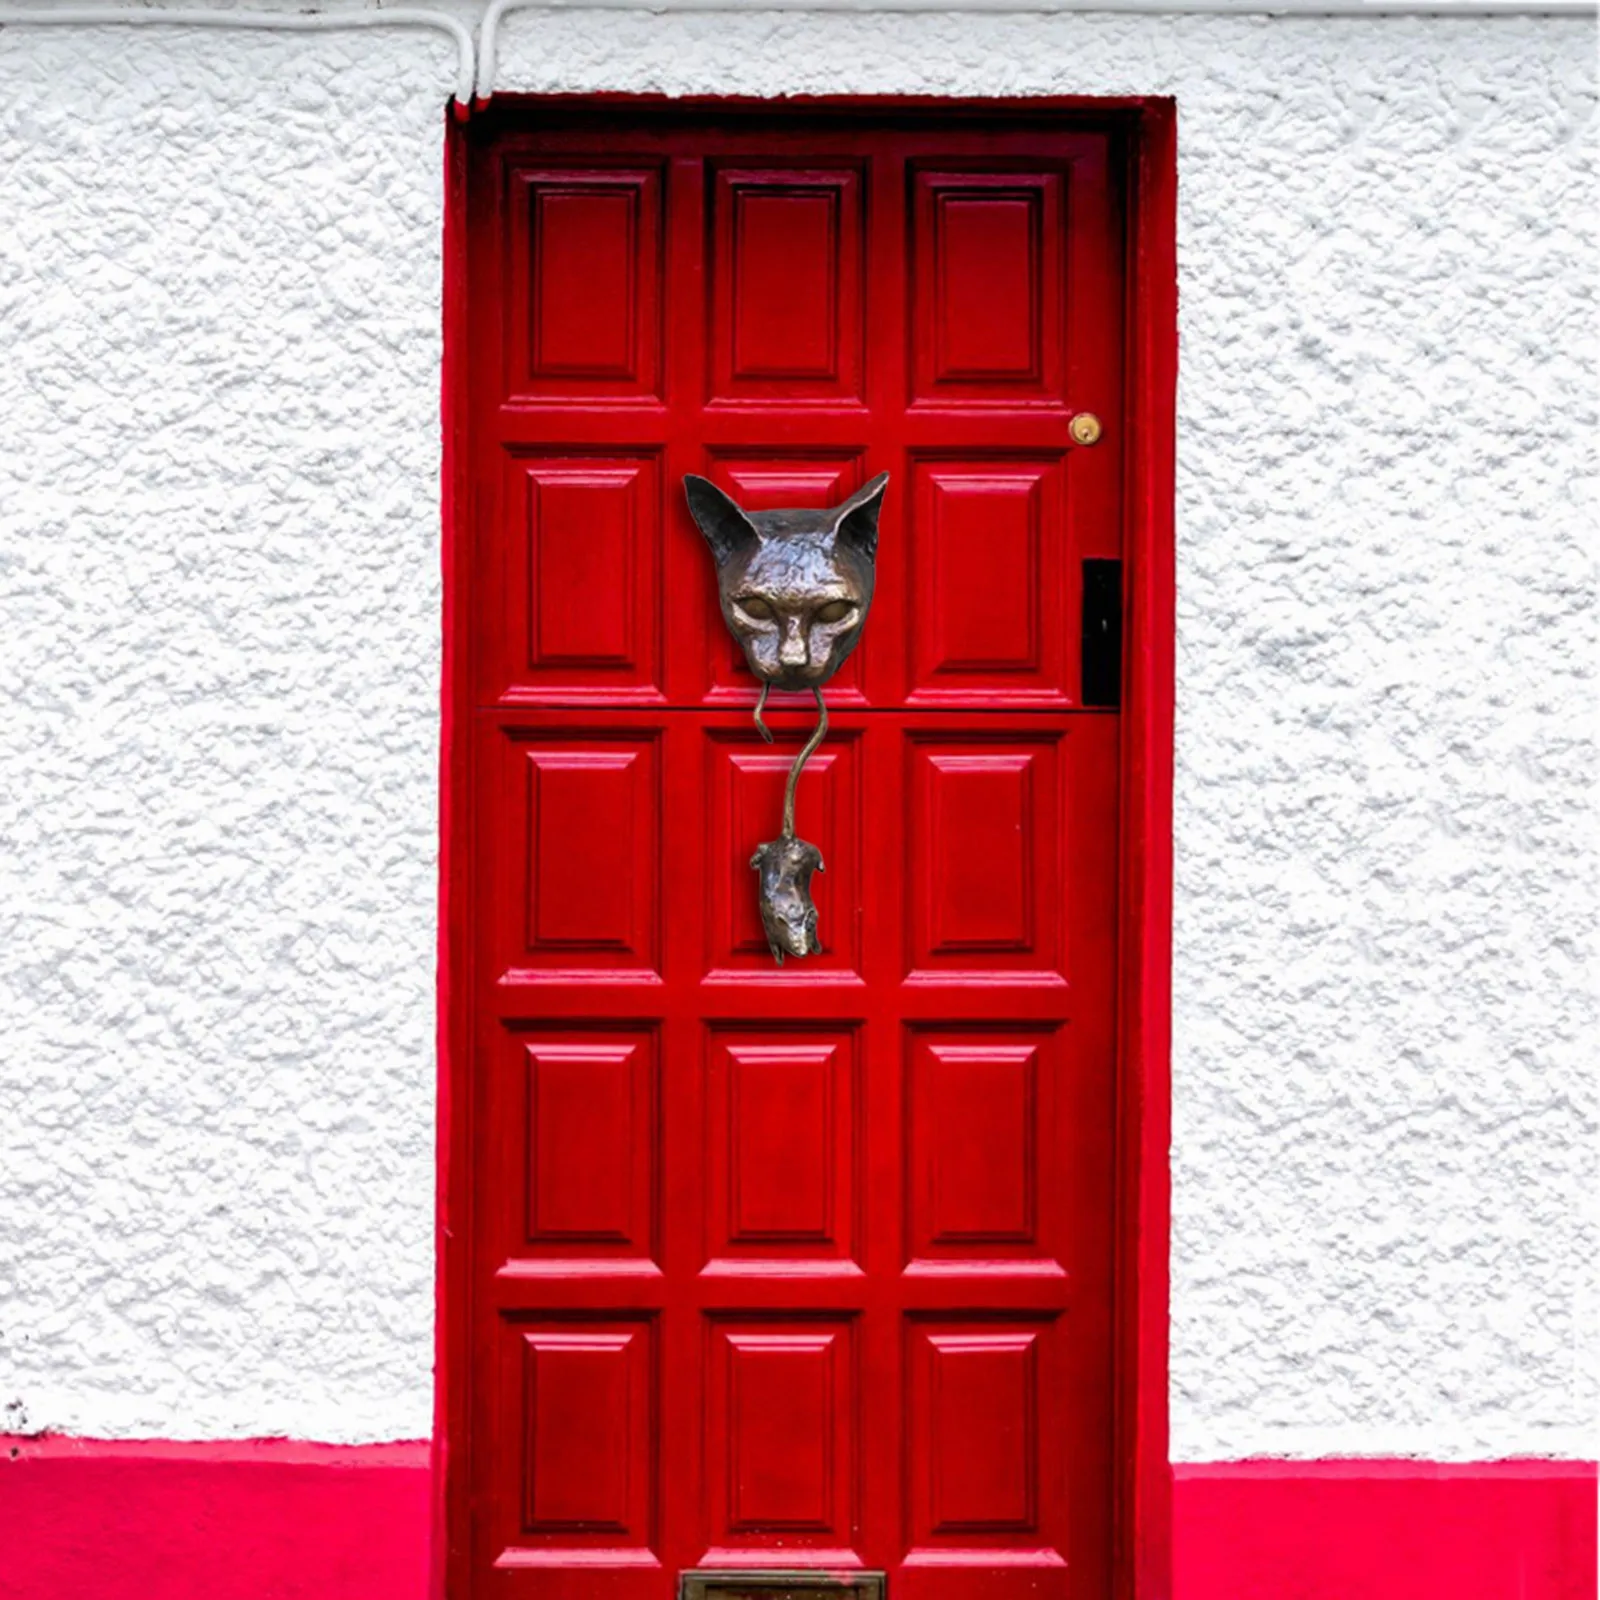 

Novelty Cat With Mouse Door Knocker Sculpture Mowse Deterret Decoration Ornament Home Decor Garden Decor Enemy Pest Repellent